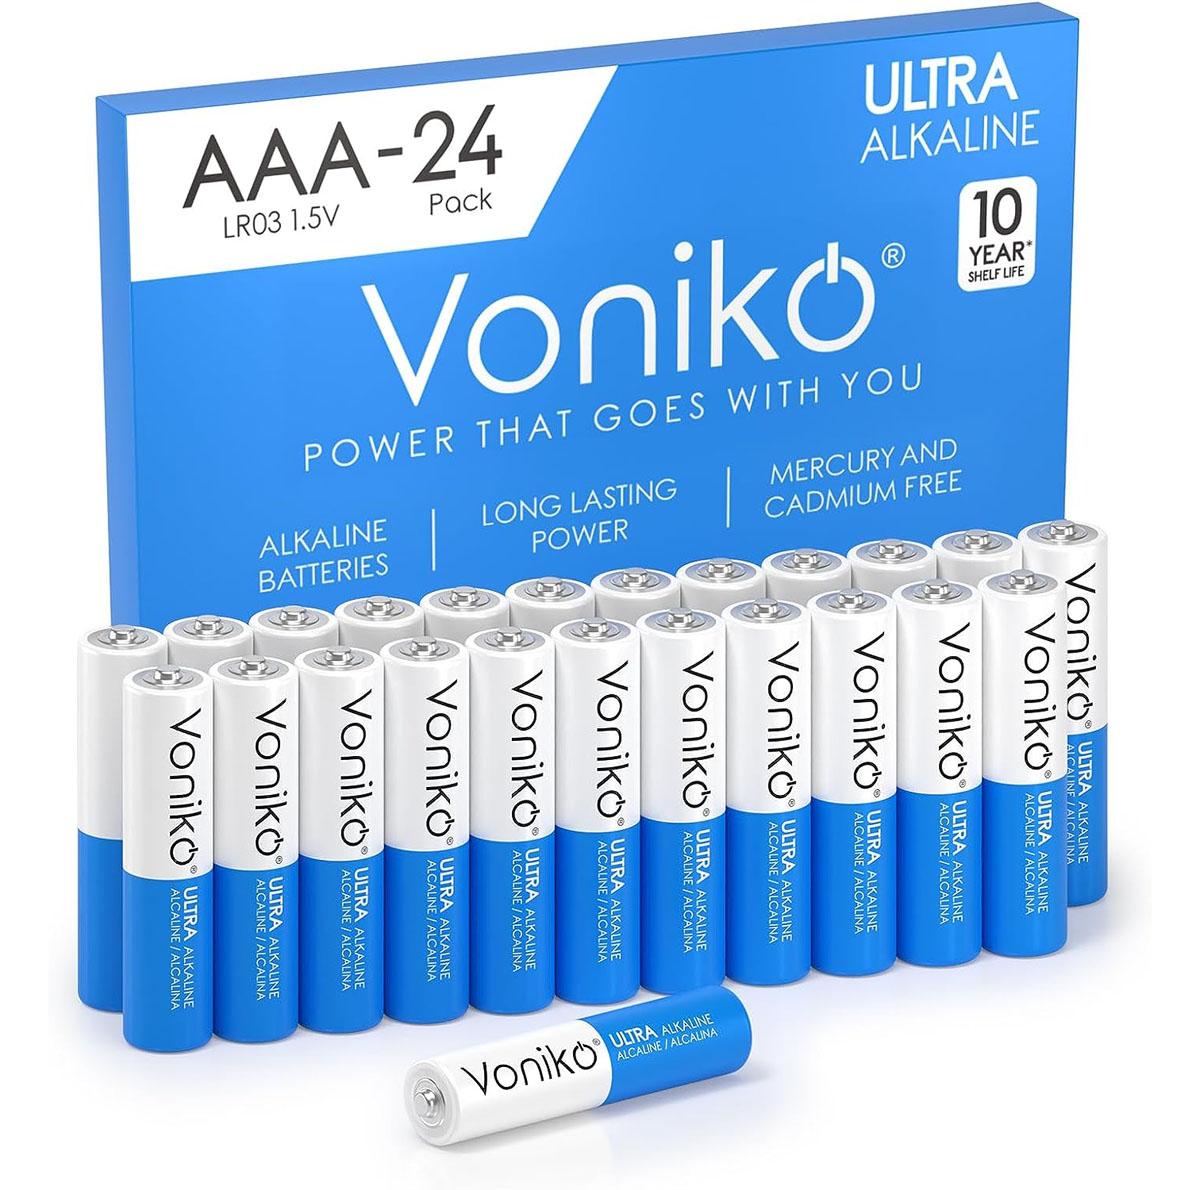 Voniko Premium Grade AAA Batteries 24 Pack for $6.45